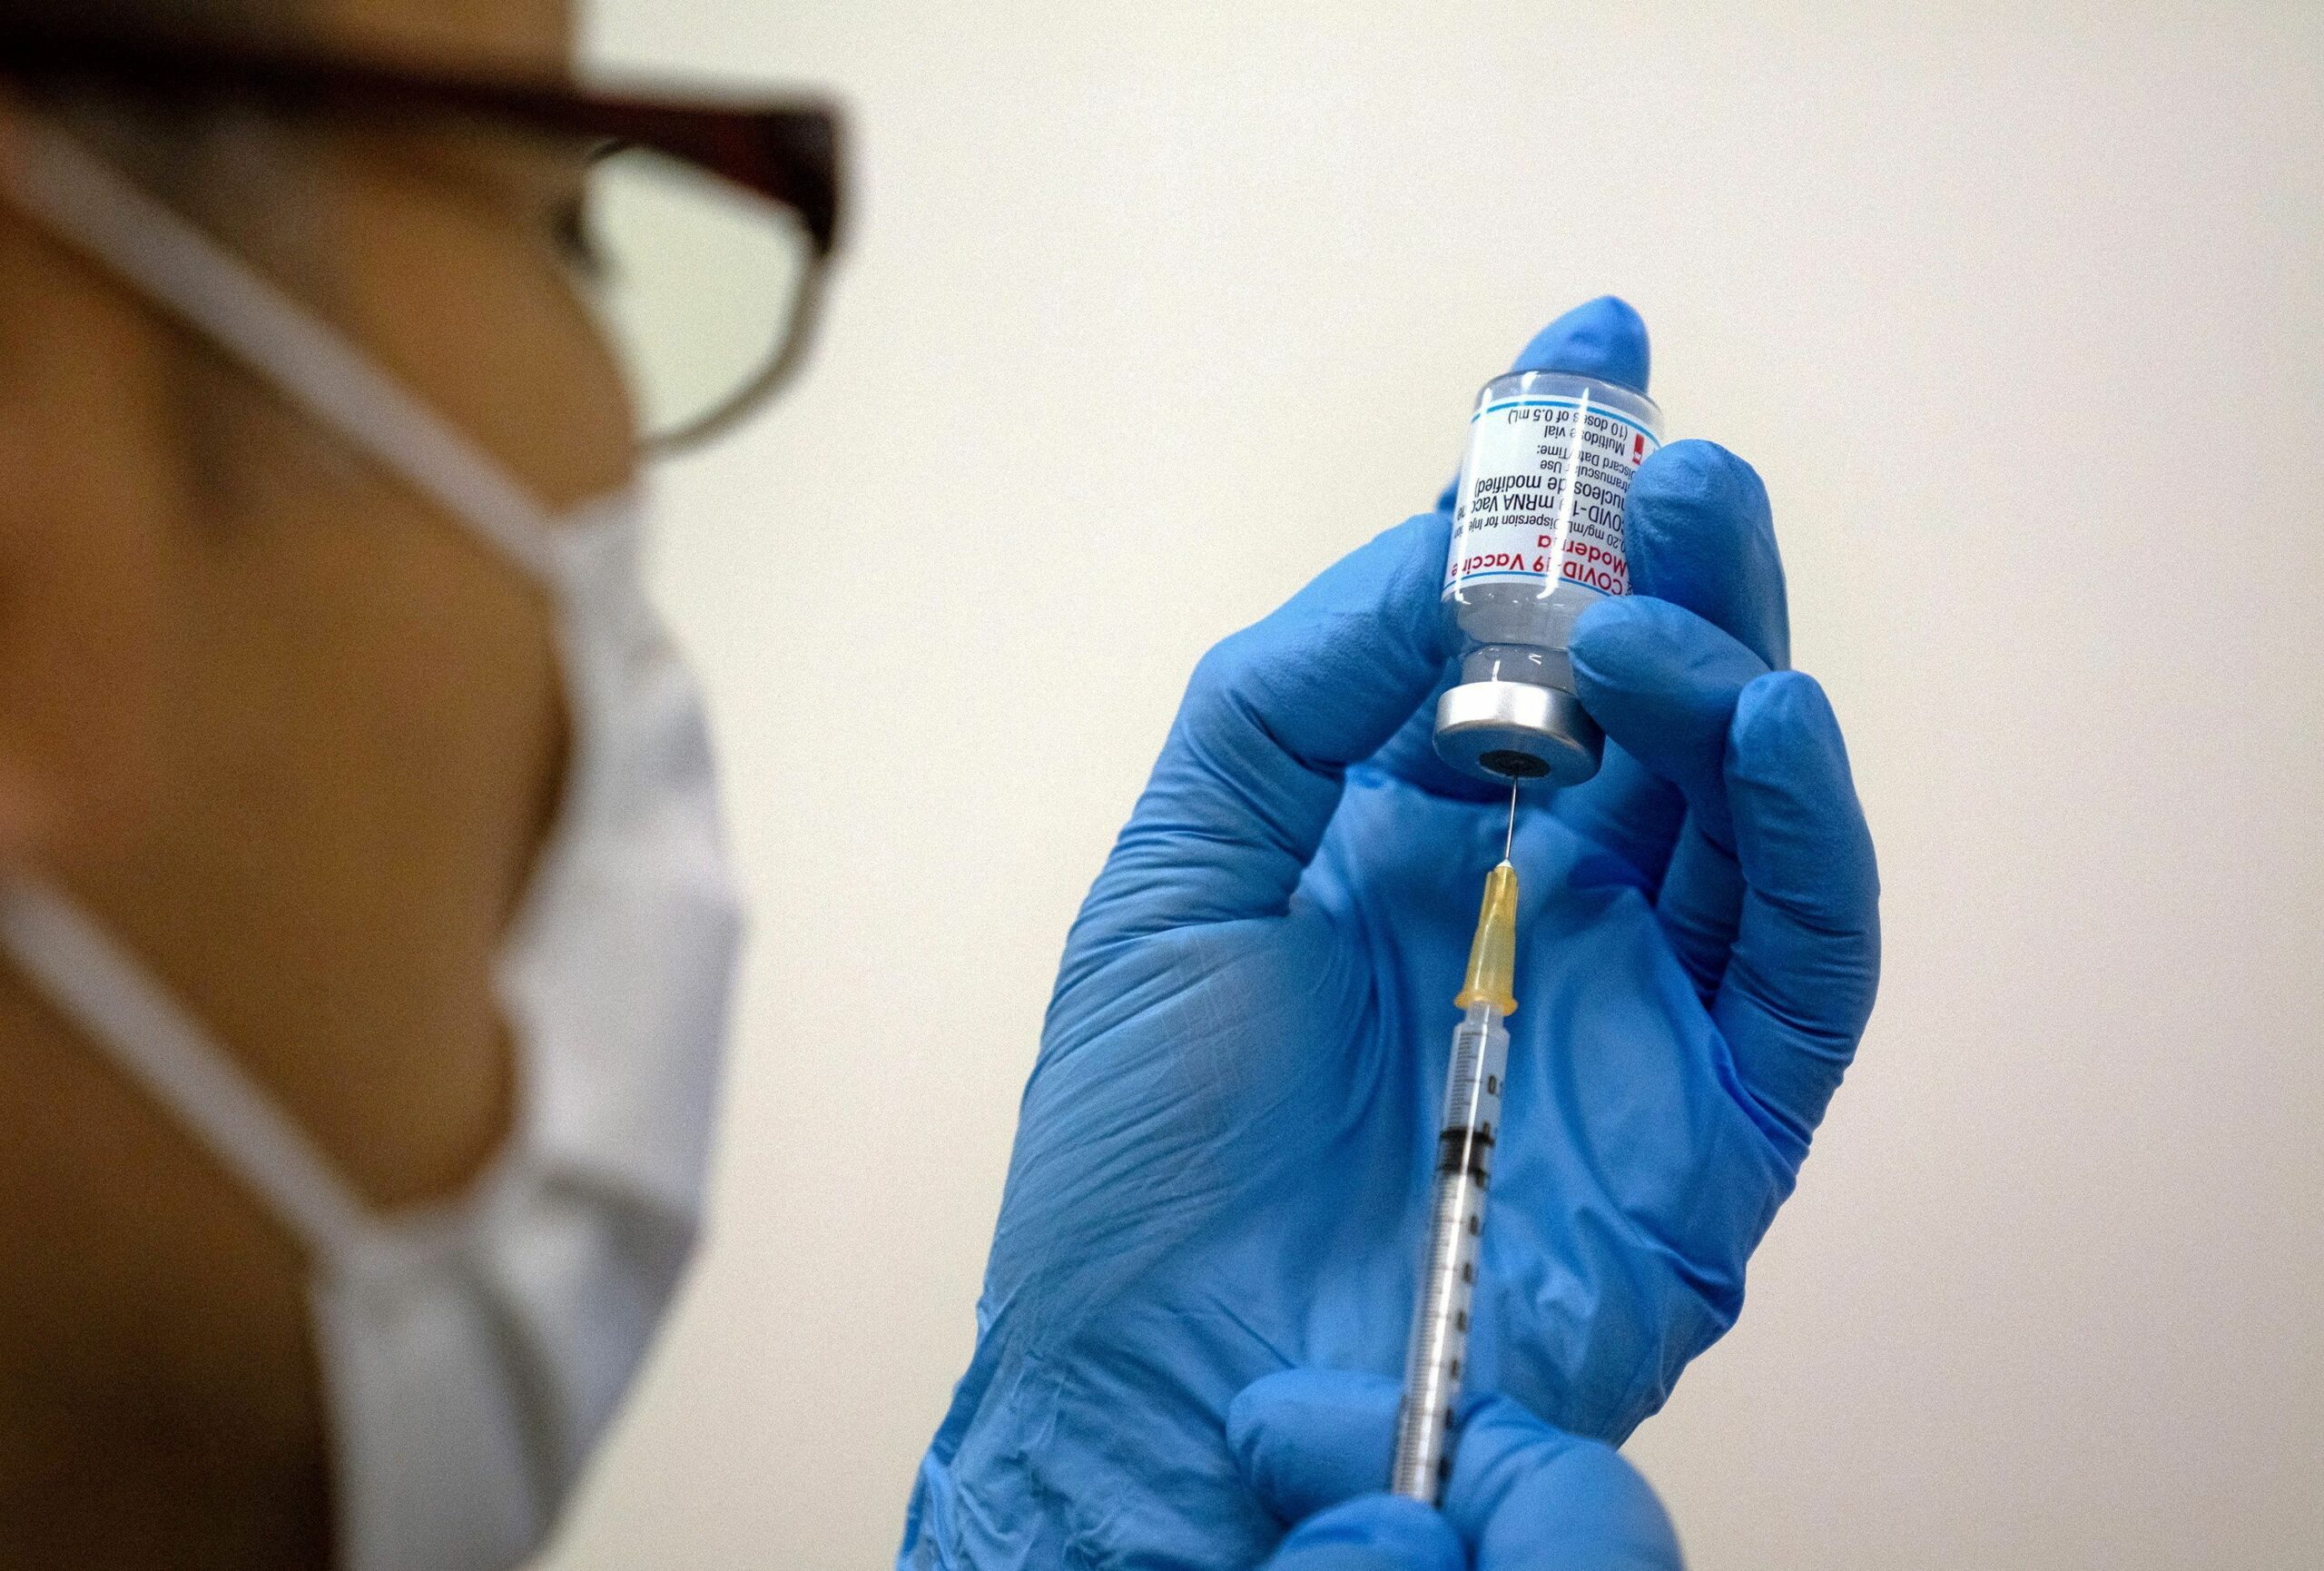 ญี่ปุ่นเผย สารปนเปื้อนในวัคซีนโมเดอร์นา อาจเกิดจากเข็มฉีดยา – ต่างประเทศ